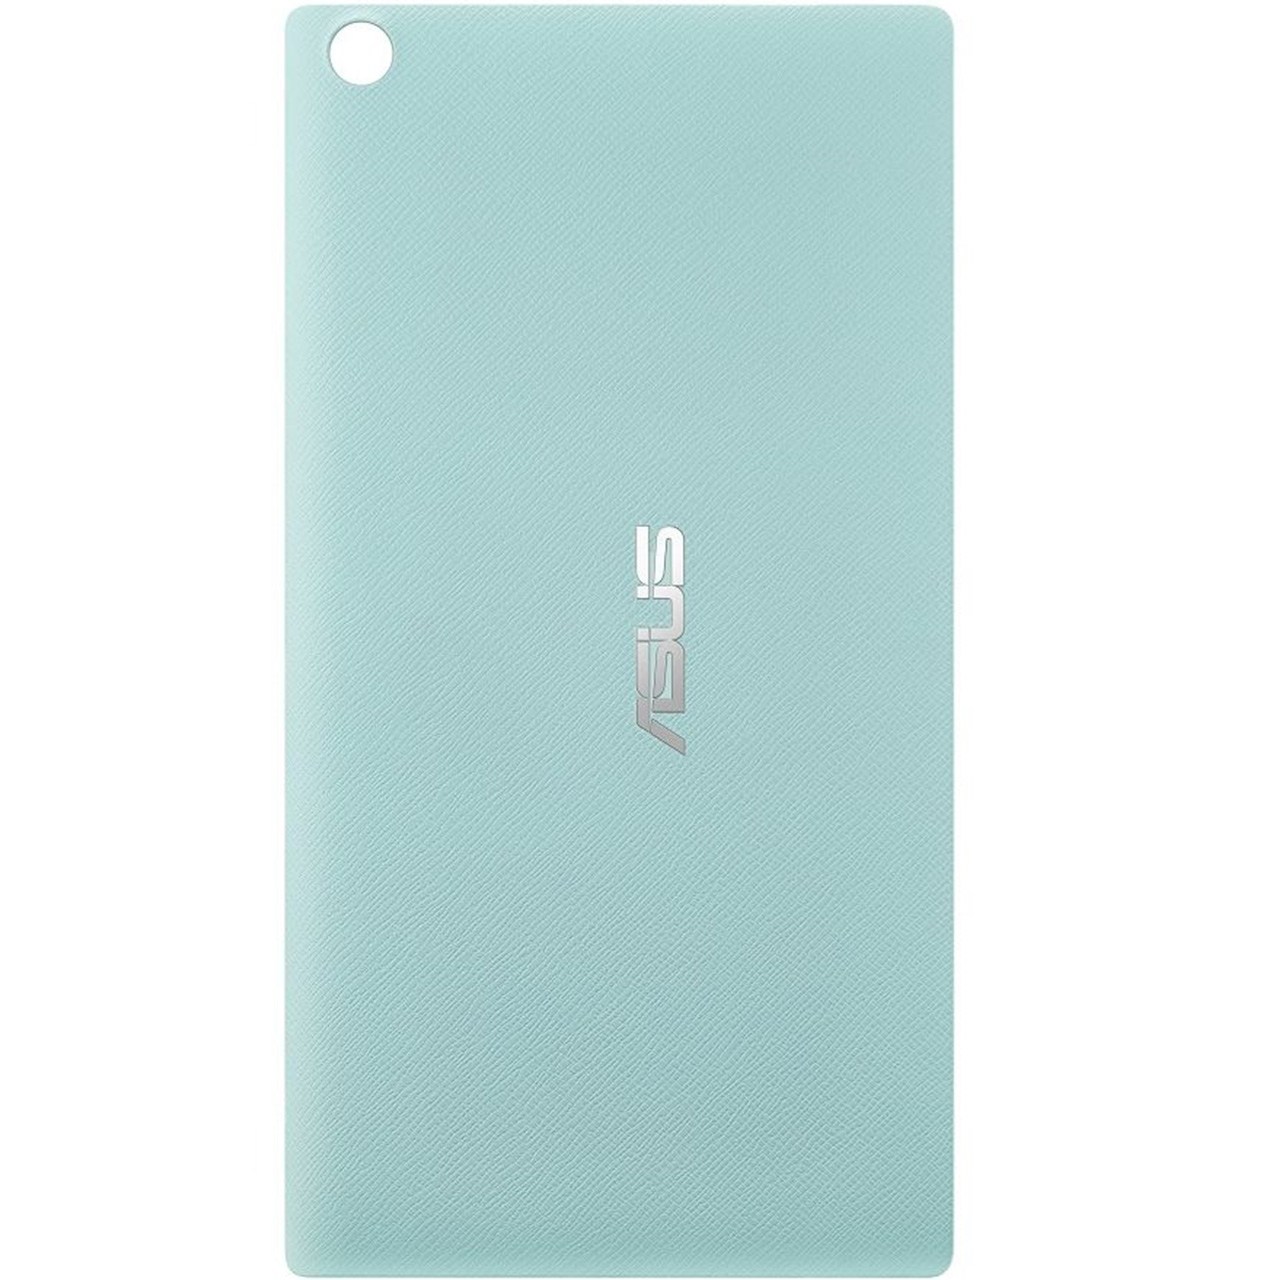 قاب پشت تبلت ایسوس مدل Zen Case مناسب برای تبلت ZenPad 7.0 Z370